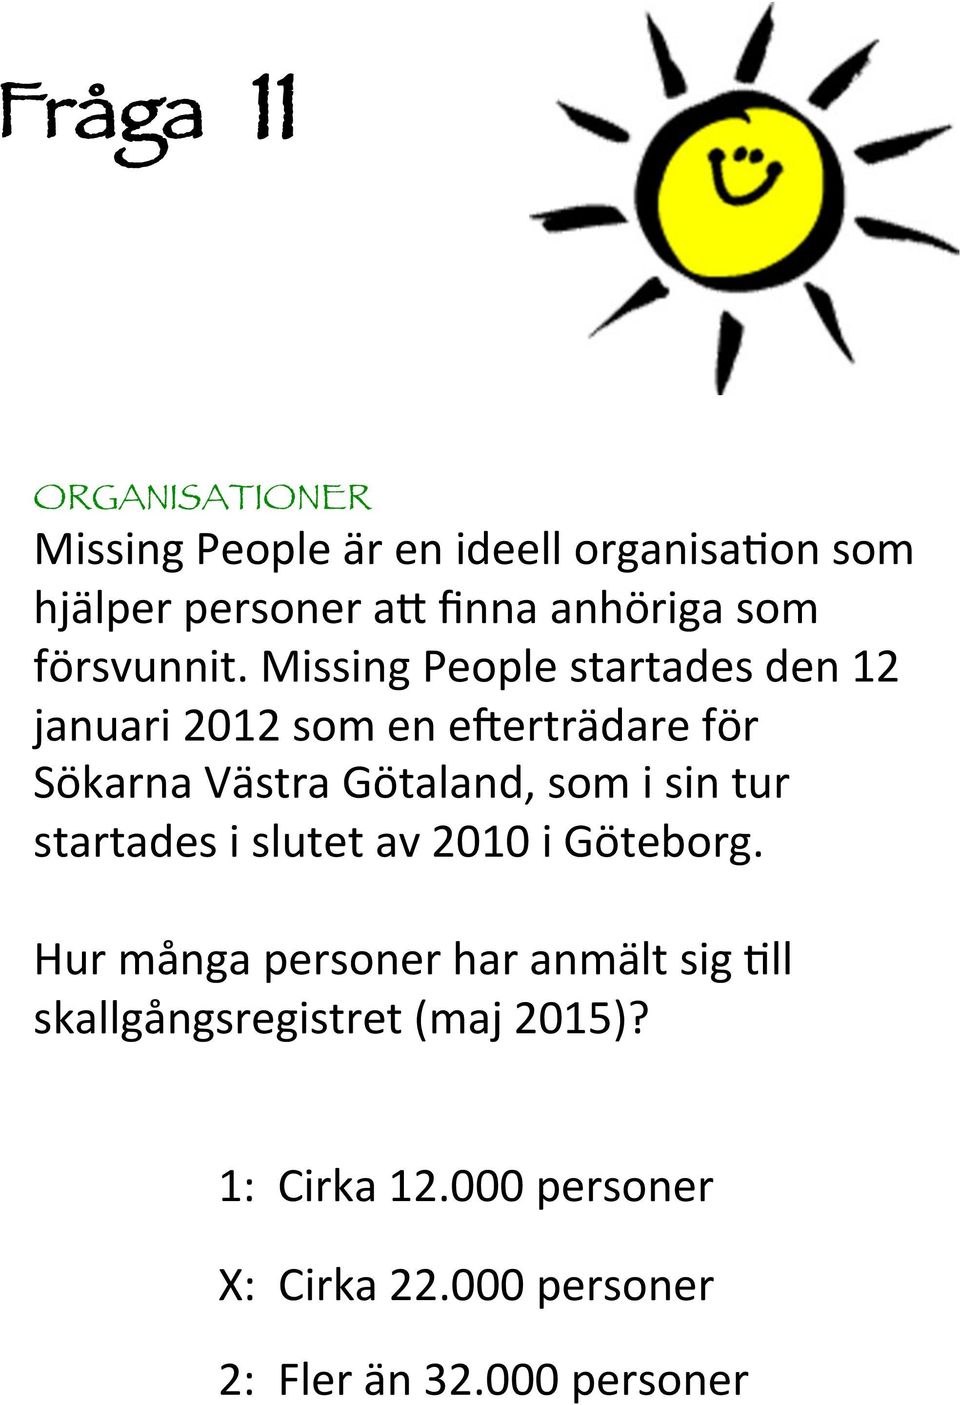 Missing People startades den januari 0 som en e4erträdare för Sökarna Västra Götaland, som i sin